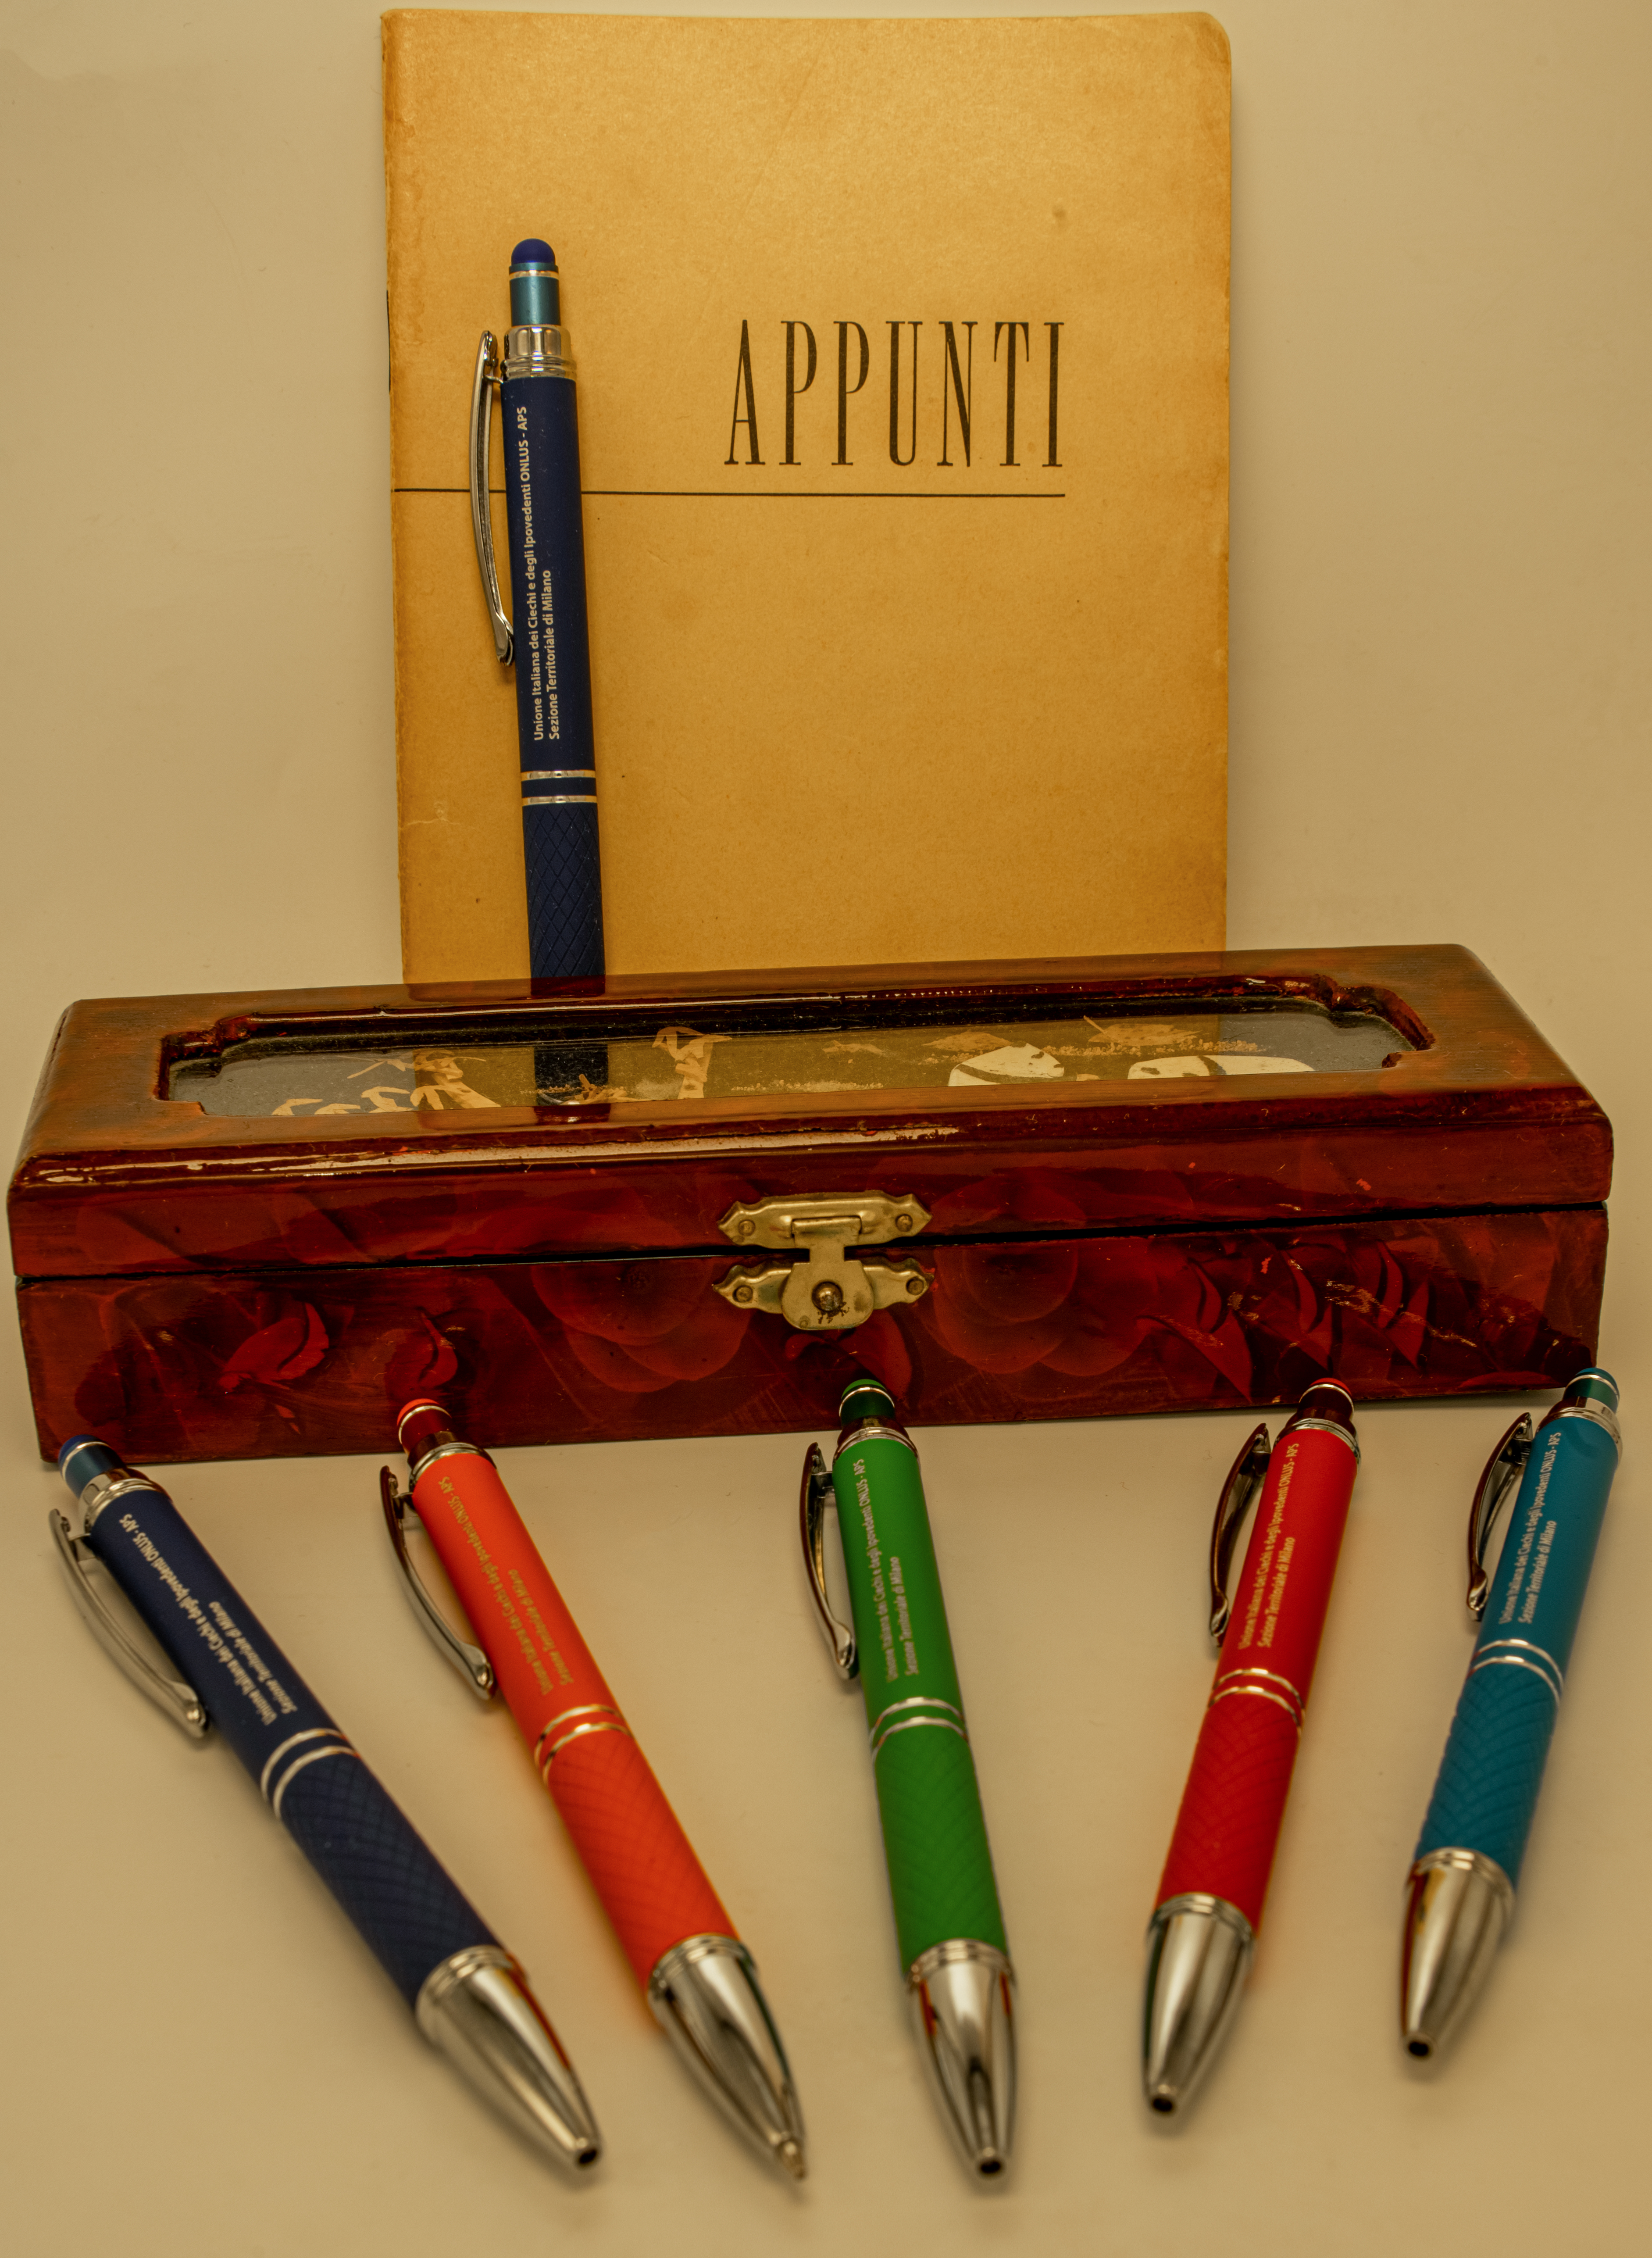 Le penne nelle cinque colorazioni e sullo sfondo un blocco per appunti ed un astuccio per penne d'epoca.